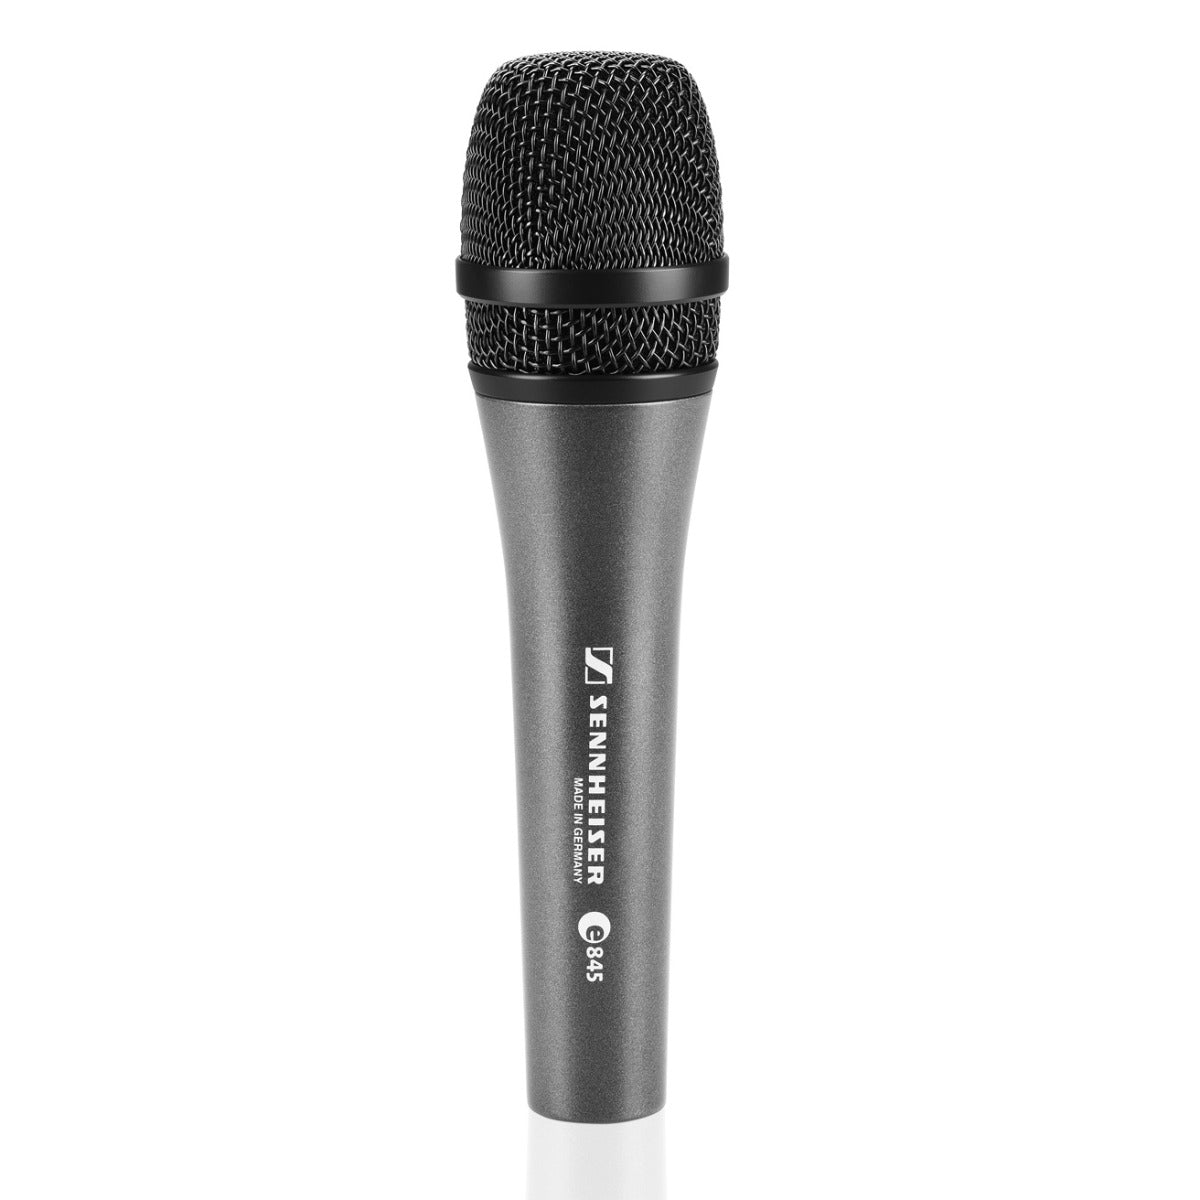 Sennheiser e 845 Dynamic Vocal Microphone